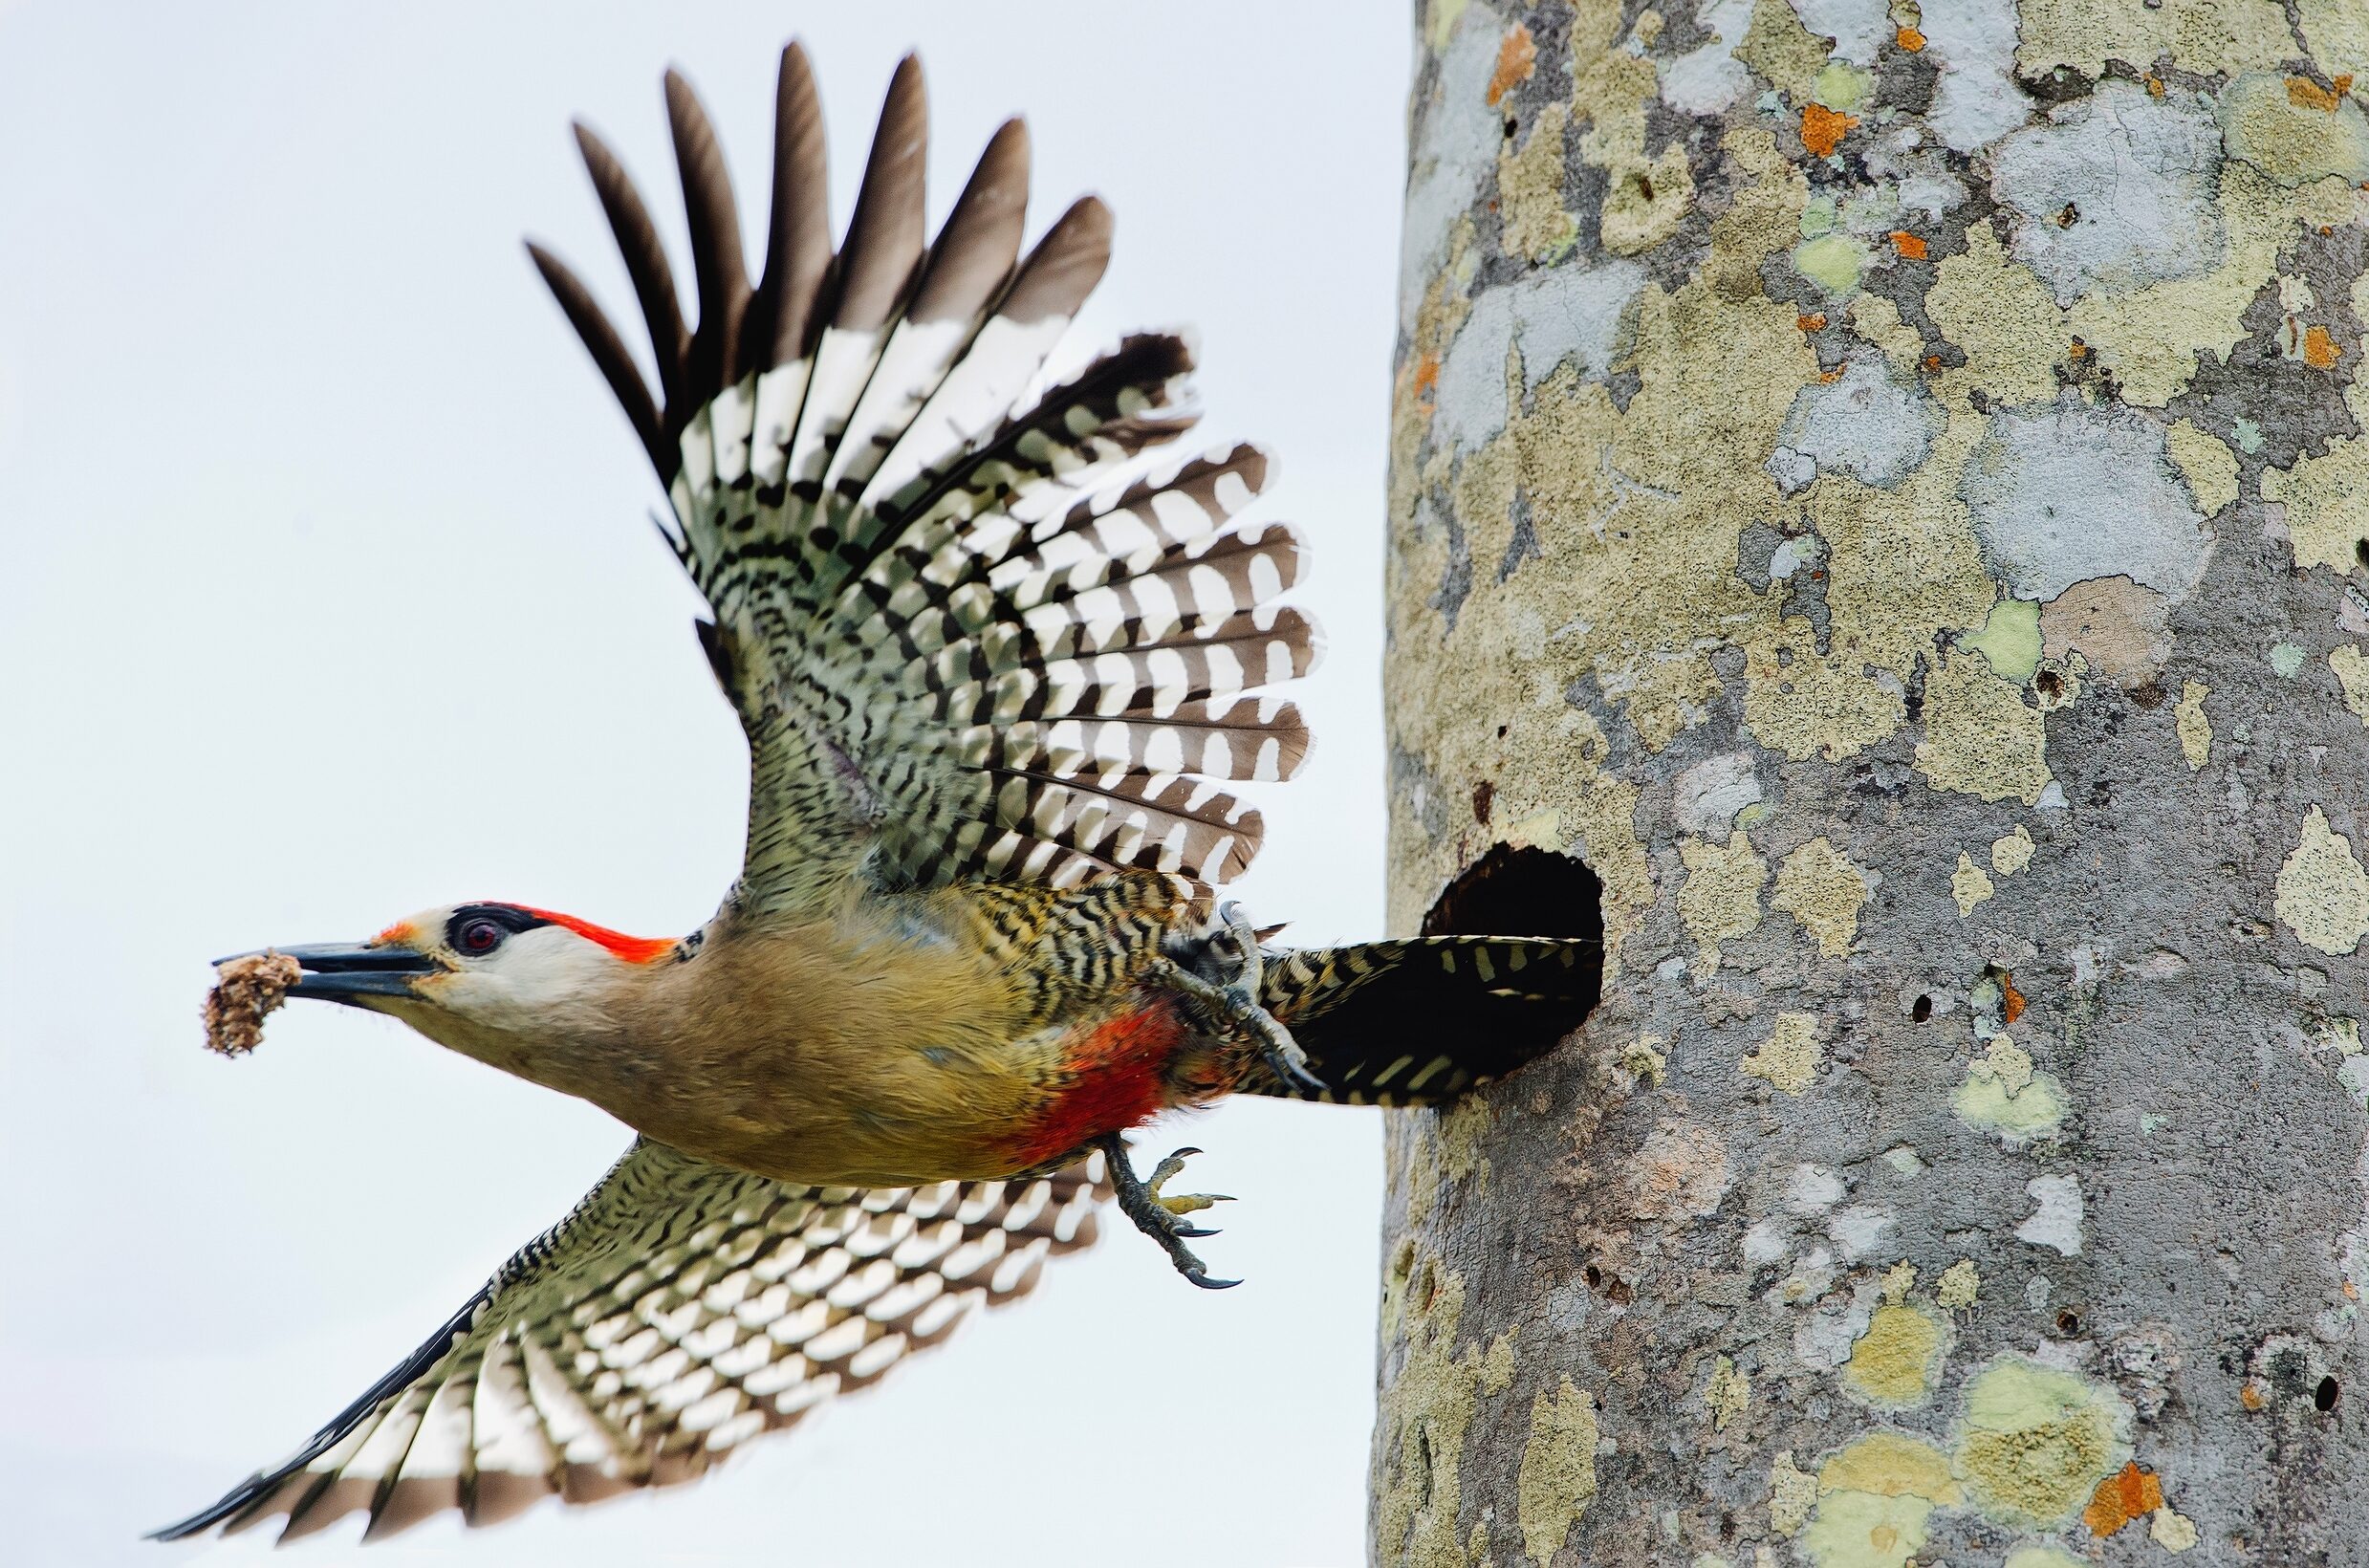 Woodpecker leaving nest